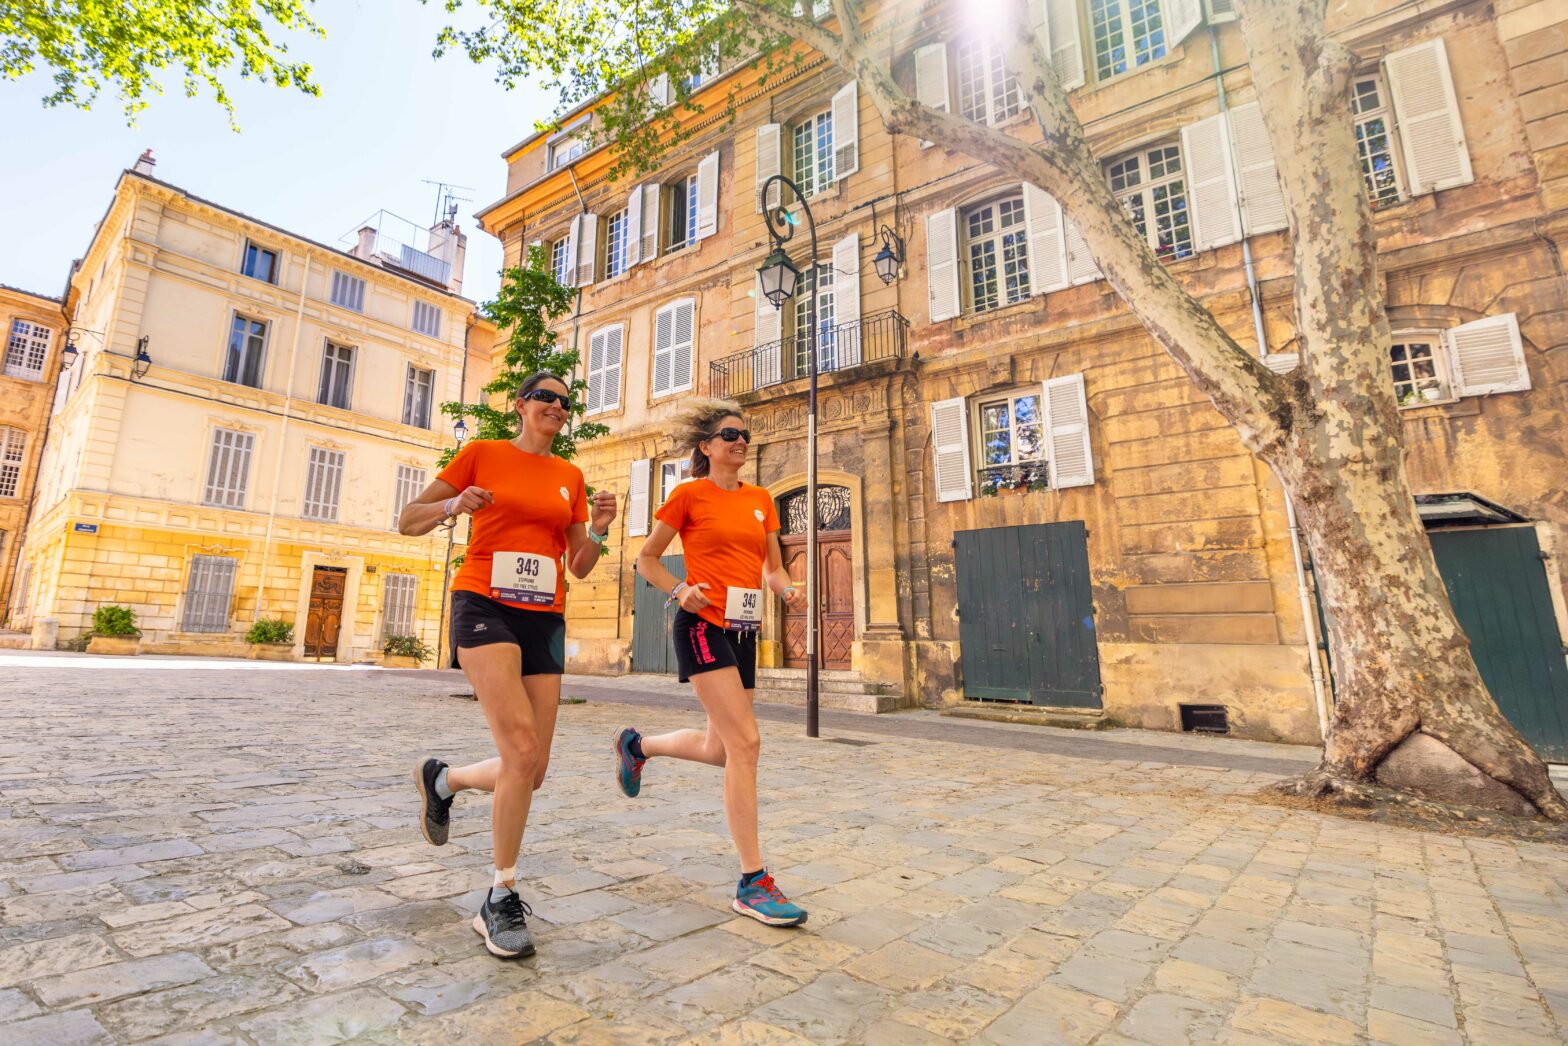 Popeuses qui courent dans les rues d'Aix-en-Provence lors de leur week-end dans la ville